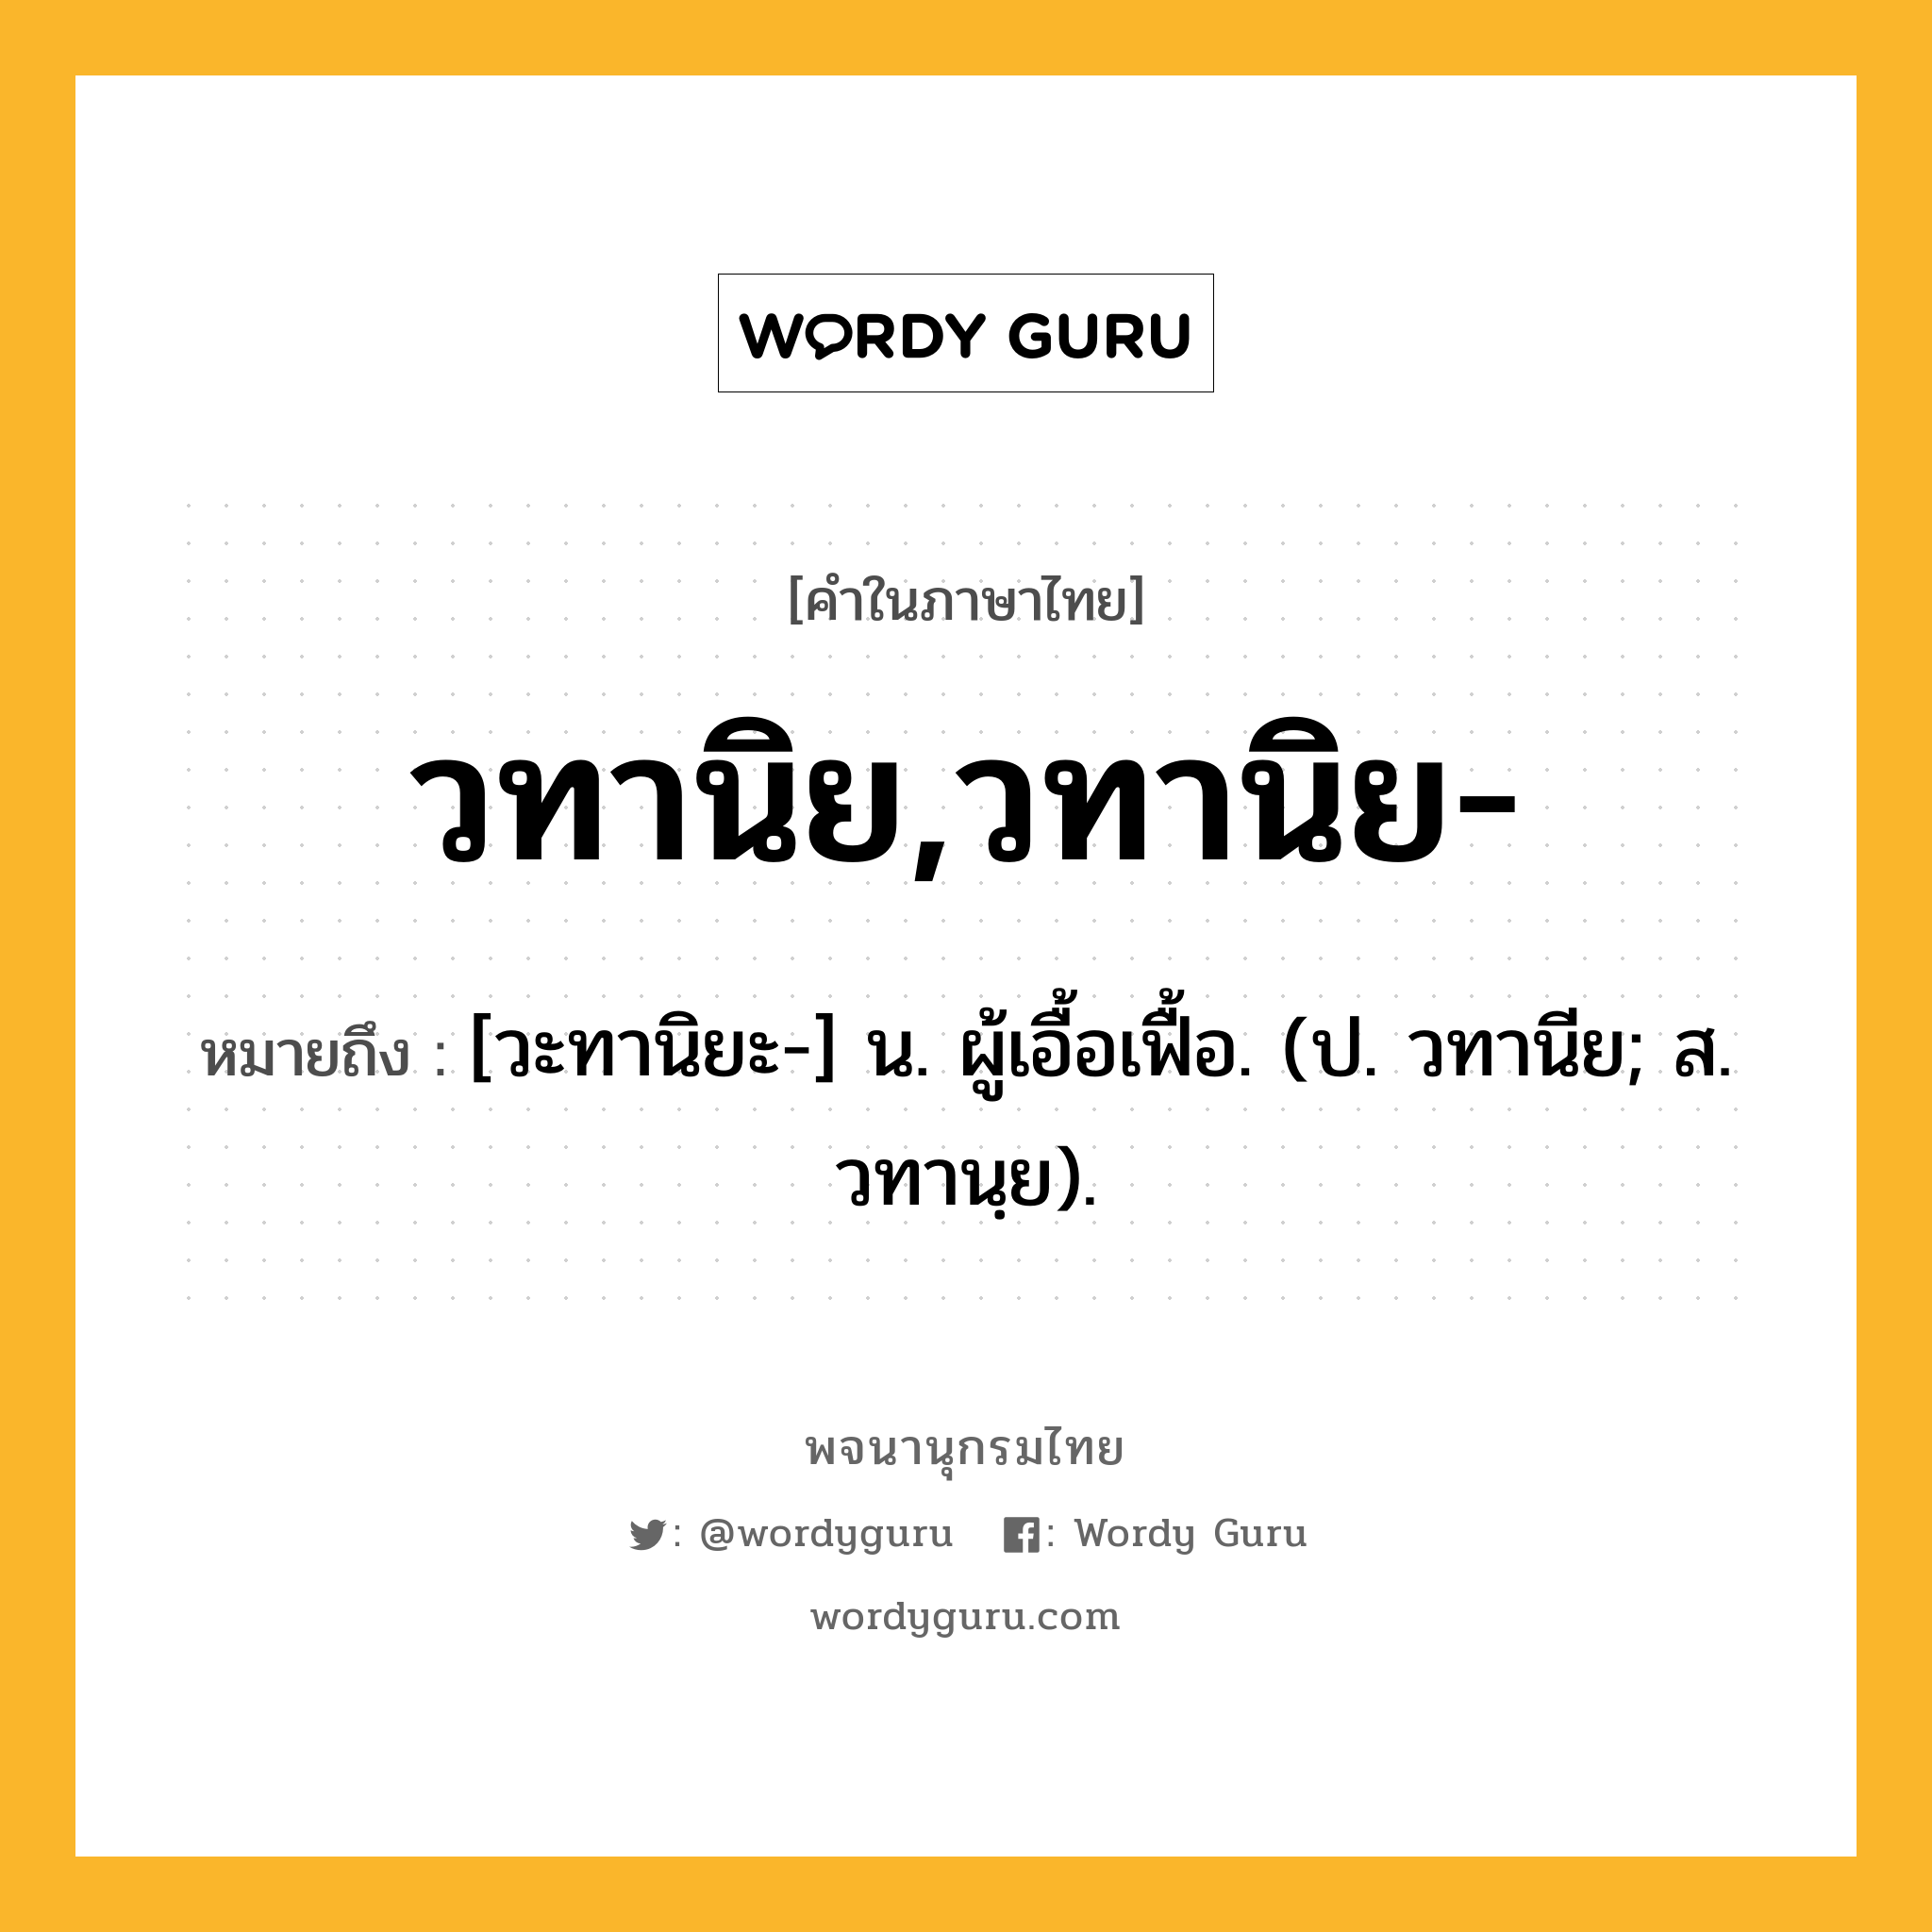 วทานิย,วทานิย- หมายถึงอะไร?, คำในภาษาไทย วทานิย,วทานิย- หมายถึง [วะทานิยะ-] น. ผู้เอื้อเฟื้อ. (ป. วทานีย; ส. วทานฺย).